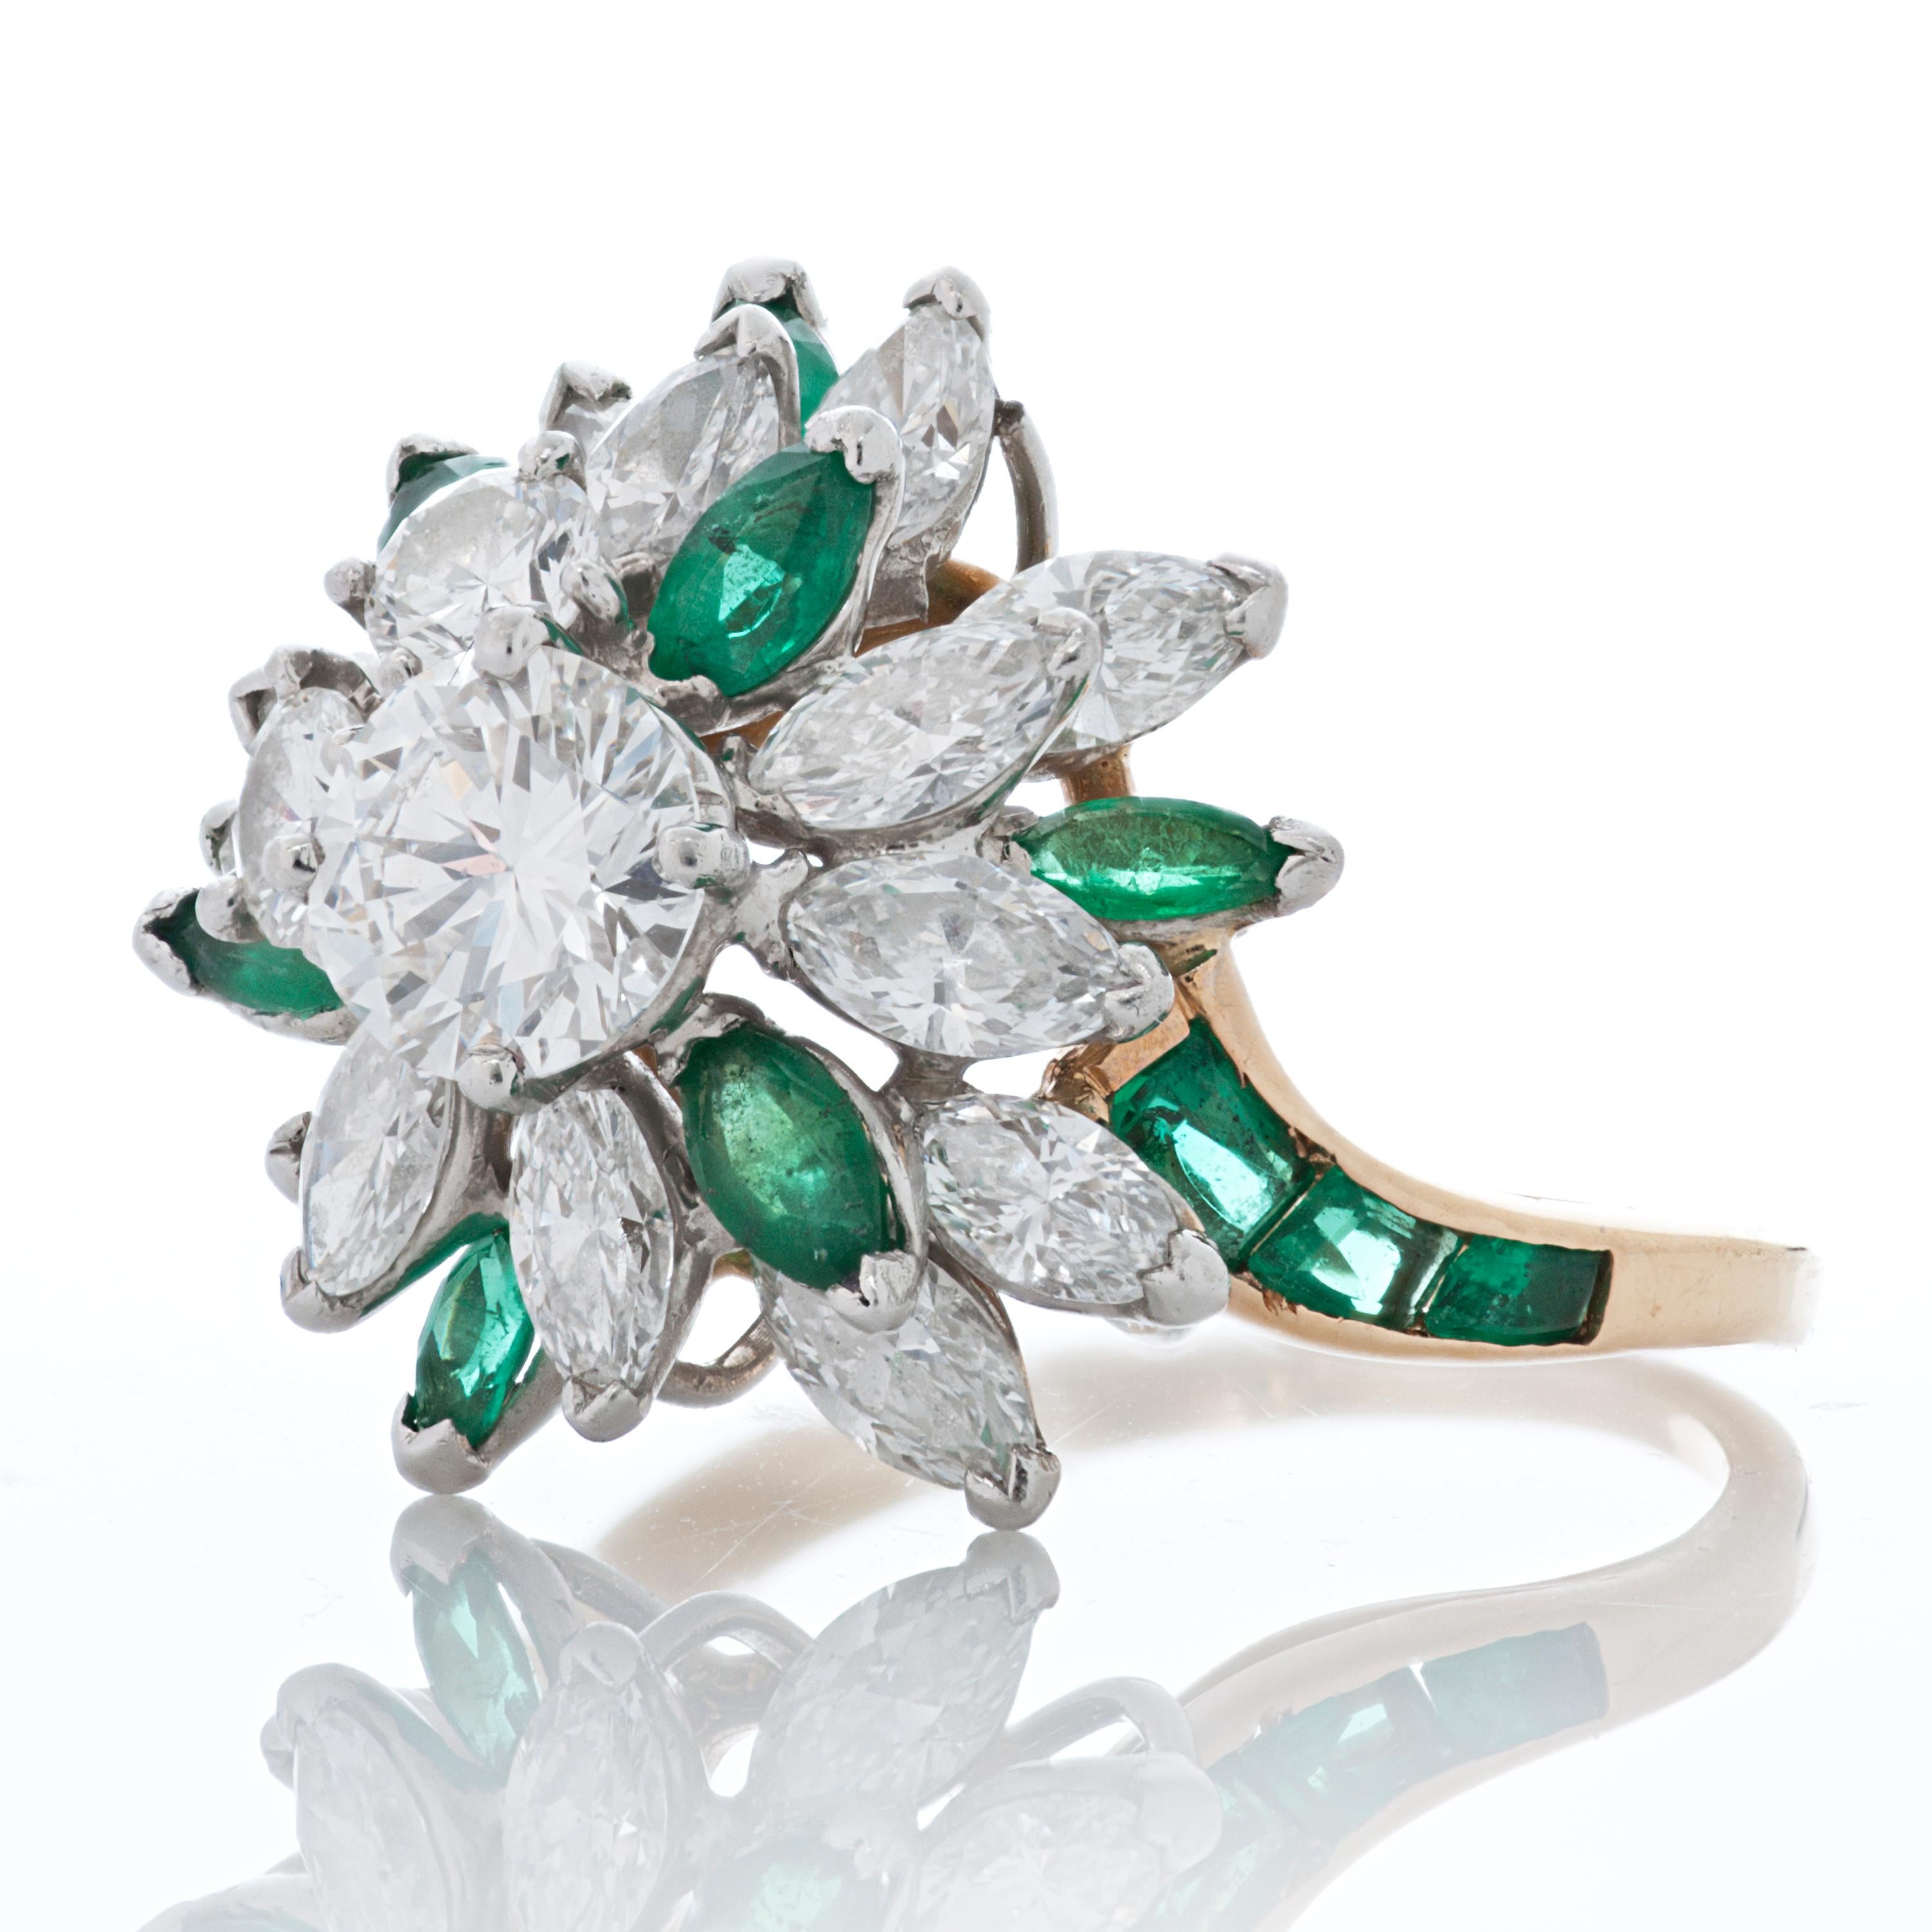 Oscar Heyman Diamant und Smaragd 18k Gelbgold Cocktail-Cluster-Stil Ring.  

Das Herzstück dieses Rings ist ein runder Diamant von 0,70 Karat, umgeben von 2 runden Diamanten von insgesamt 0,30 Karat und 13 Diamanten im Marquiseschliff von insgesamt